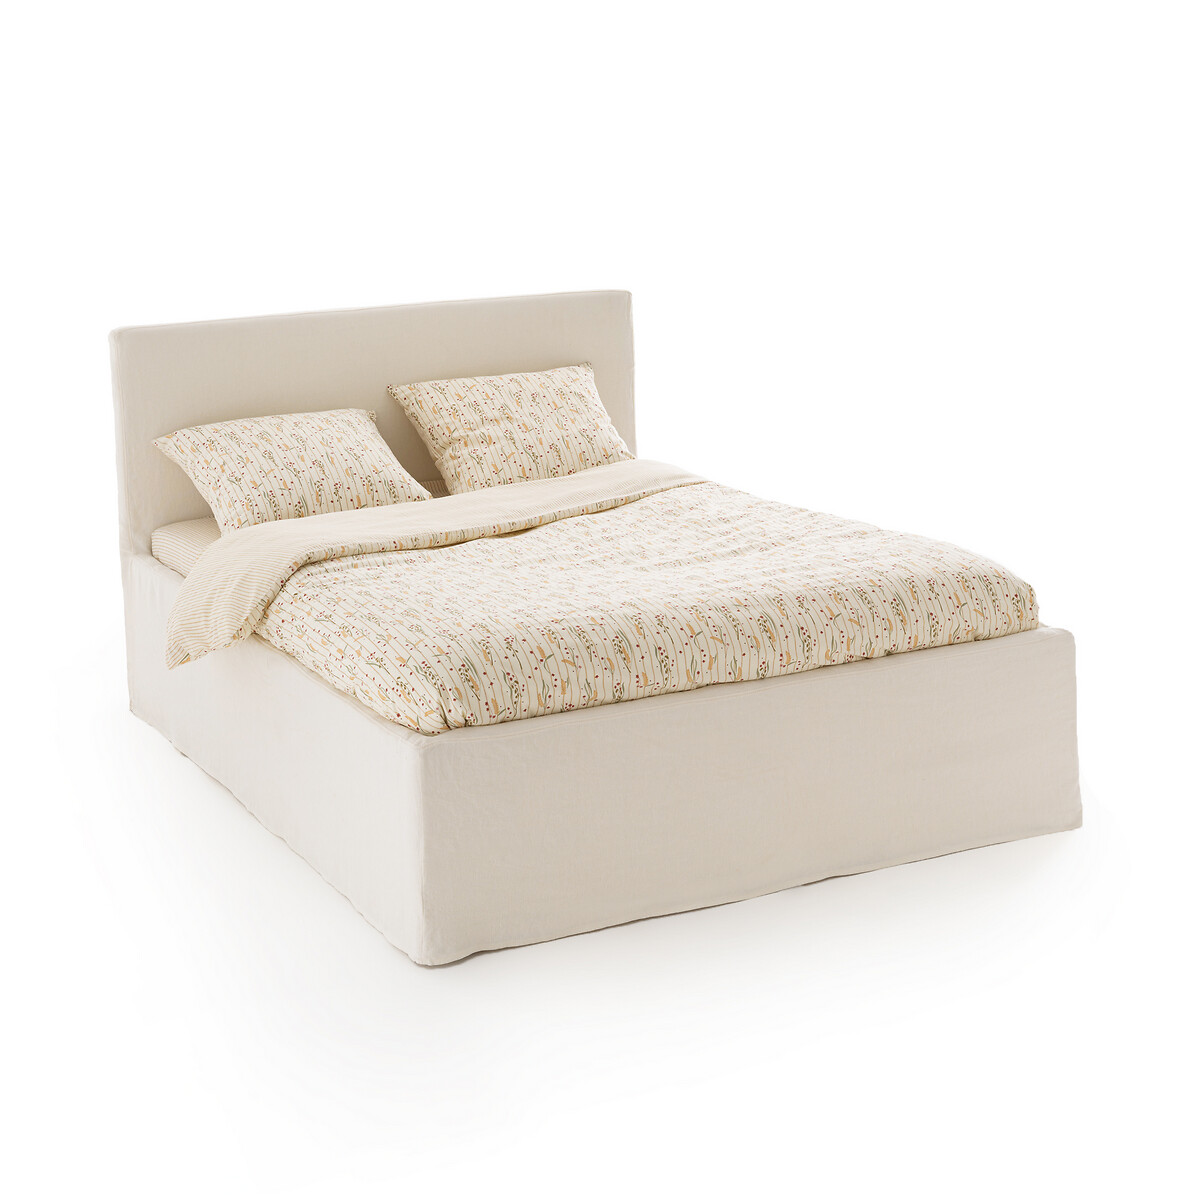 Кровать LaRedoute Со съемным чехлом Kendari 160 x 200 см белый, размер 160 x 200 см - фото 1